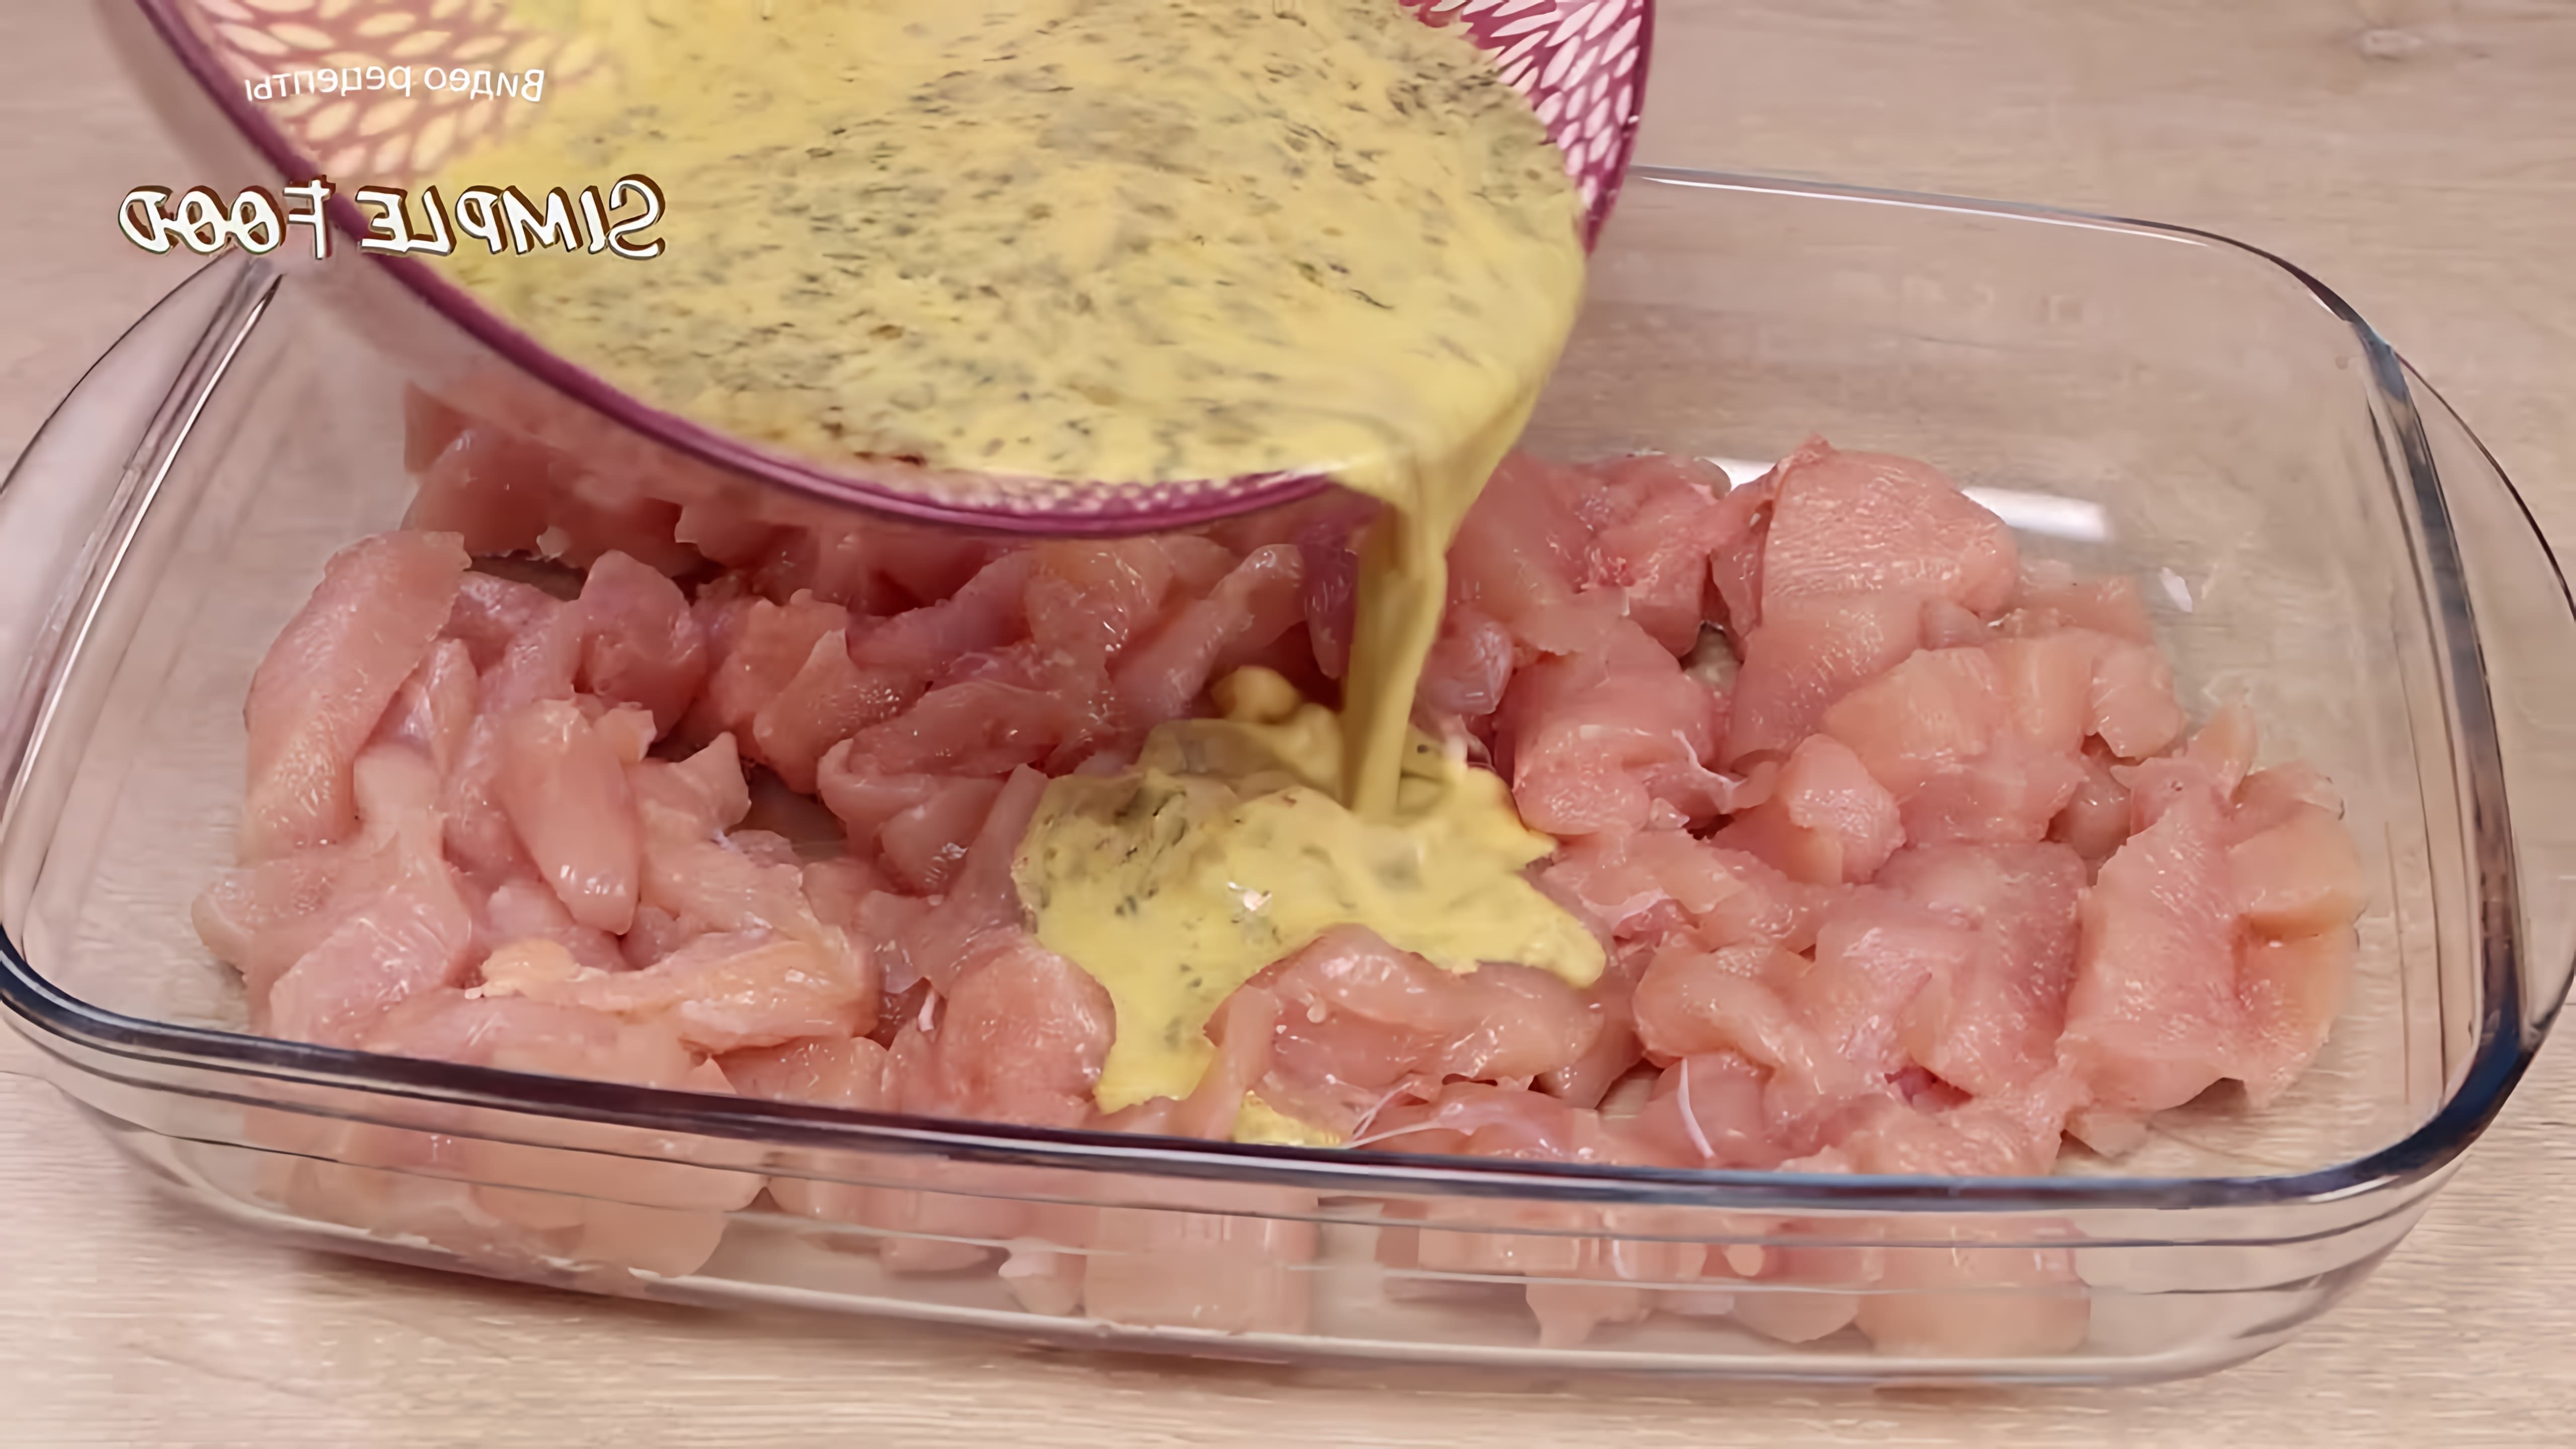 В данном видео демонстрируется процесс приготовления нежного и вкусного блюда из куриного филе